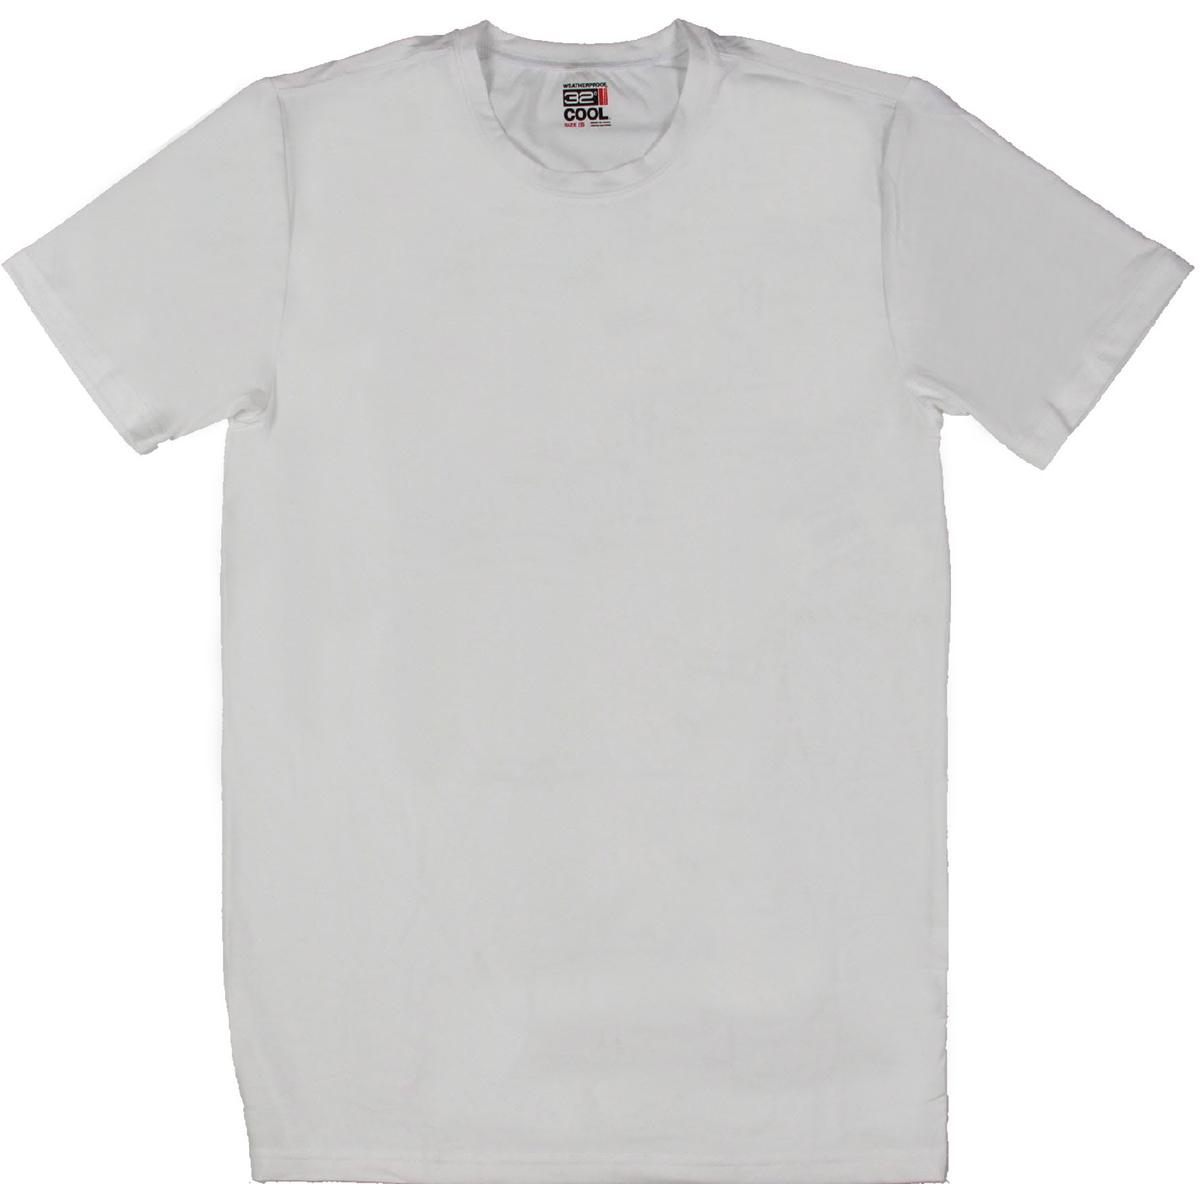 Мужская белая футболка с круглым вырезом и короткими рукавами 32 Degrees Cool M BHFO 1722